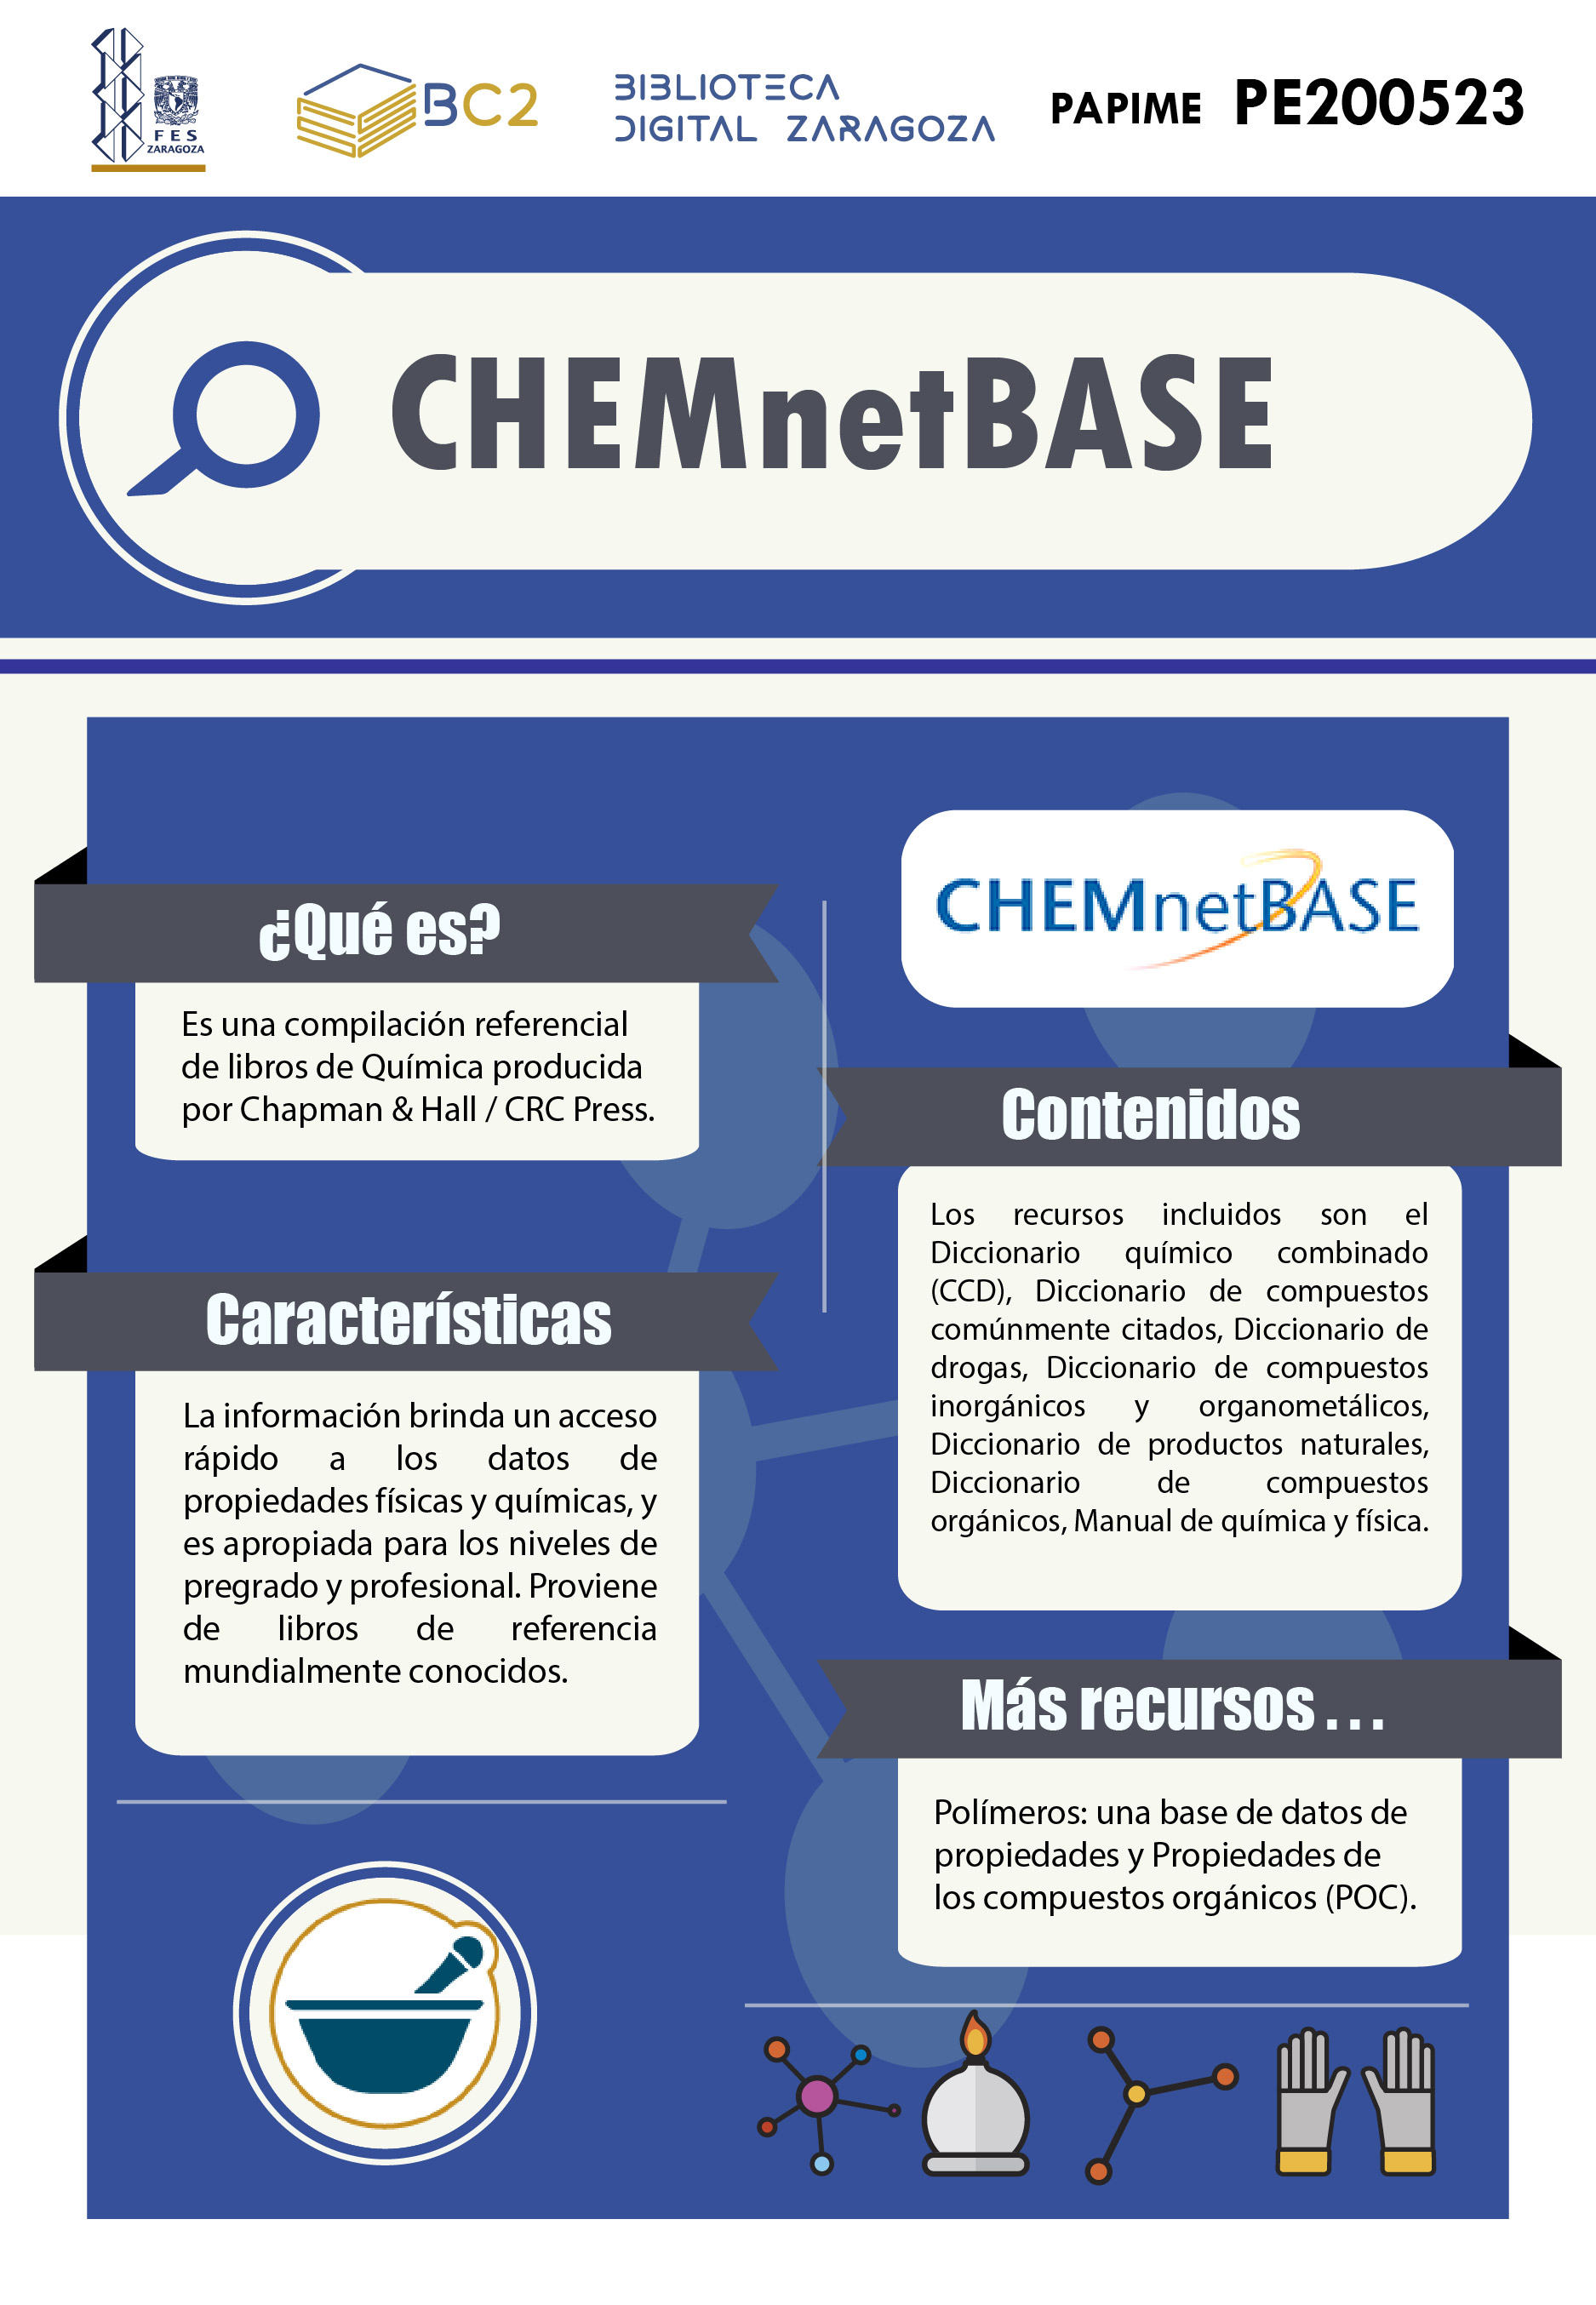 Infografía ChemnetBase